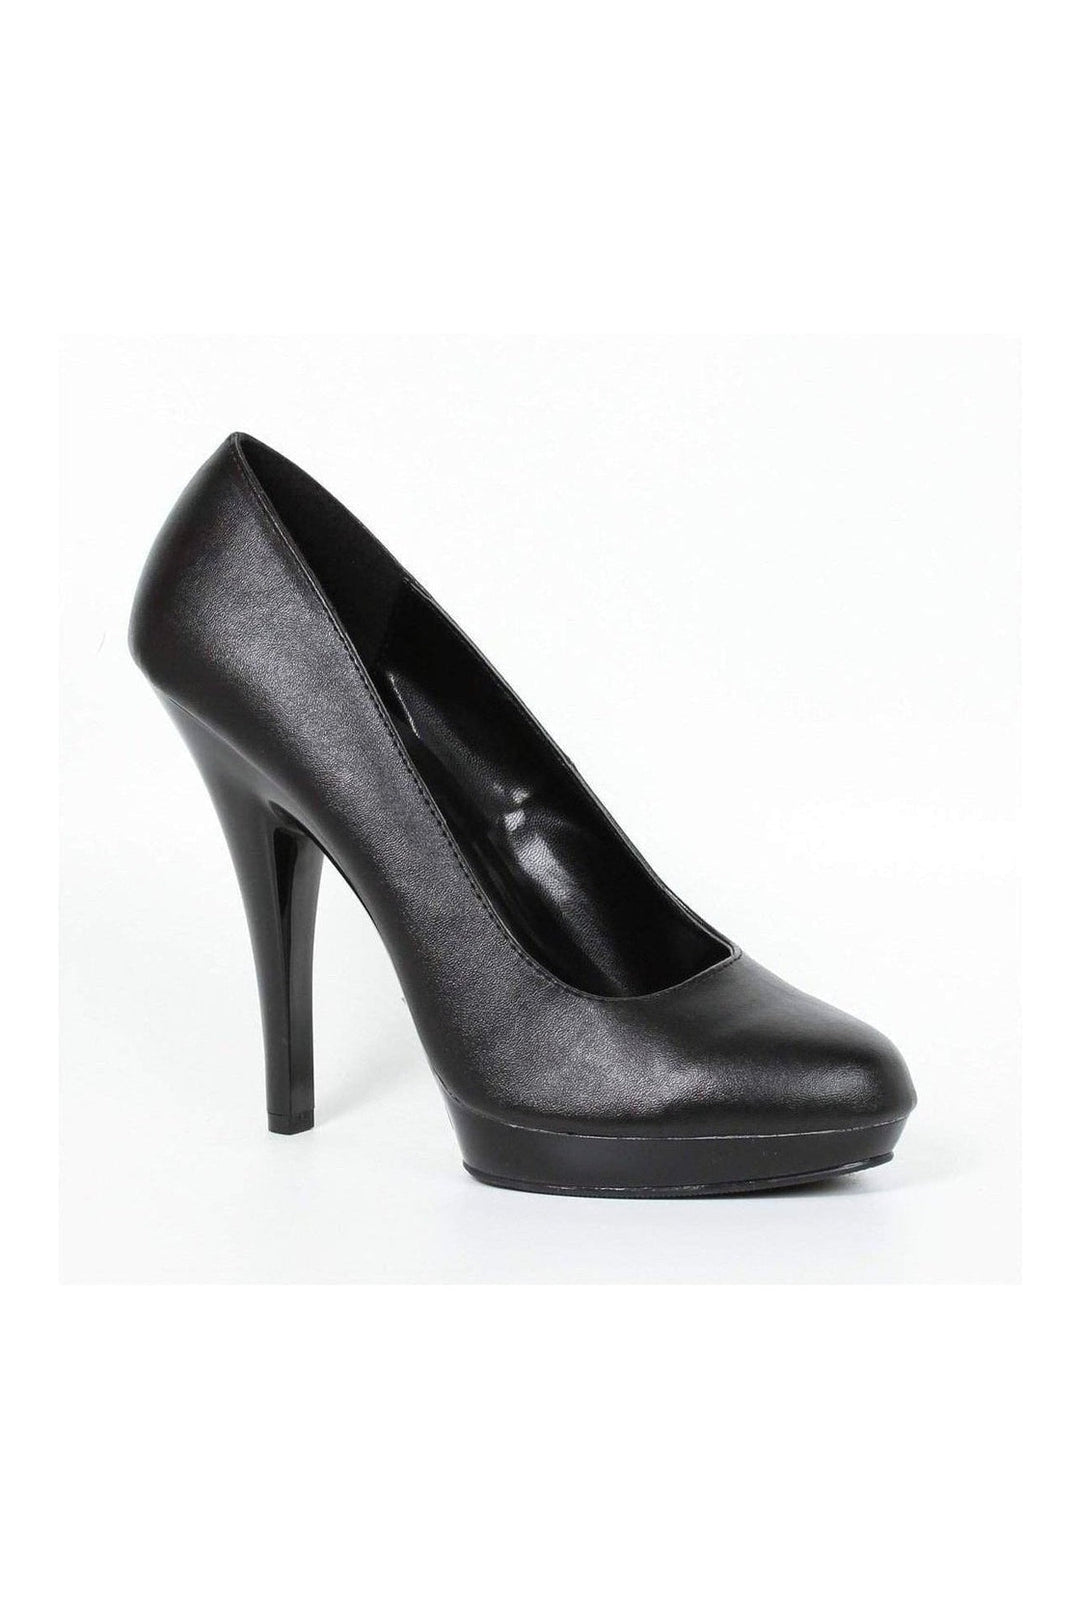 521-FEMME-W Pump | Black Patent-Ellie Shoes-Black-Pumps-SEXYSHOES.COM